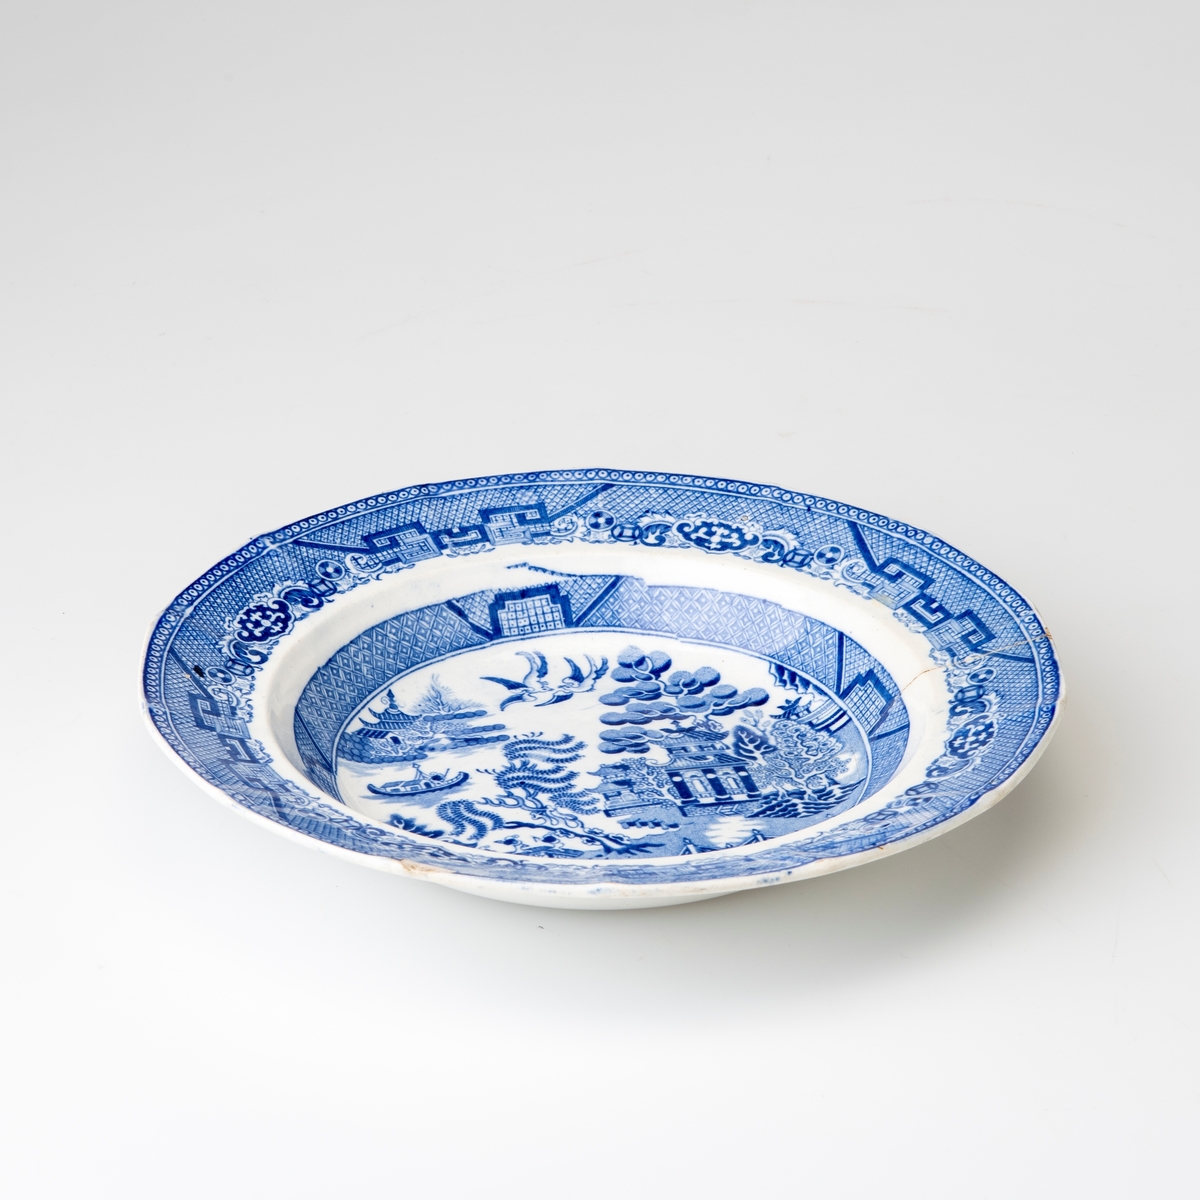 Dyp tallerken med mønsteret "Blue Willow", også kalt "China", i blått på hvit bunn.